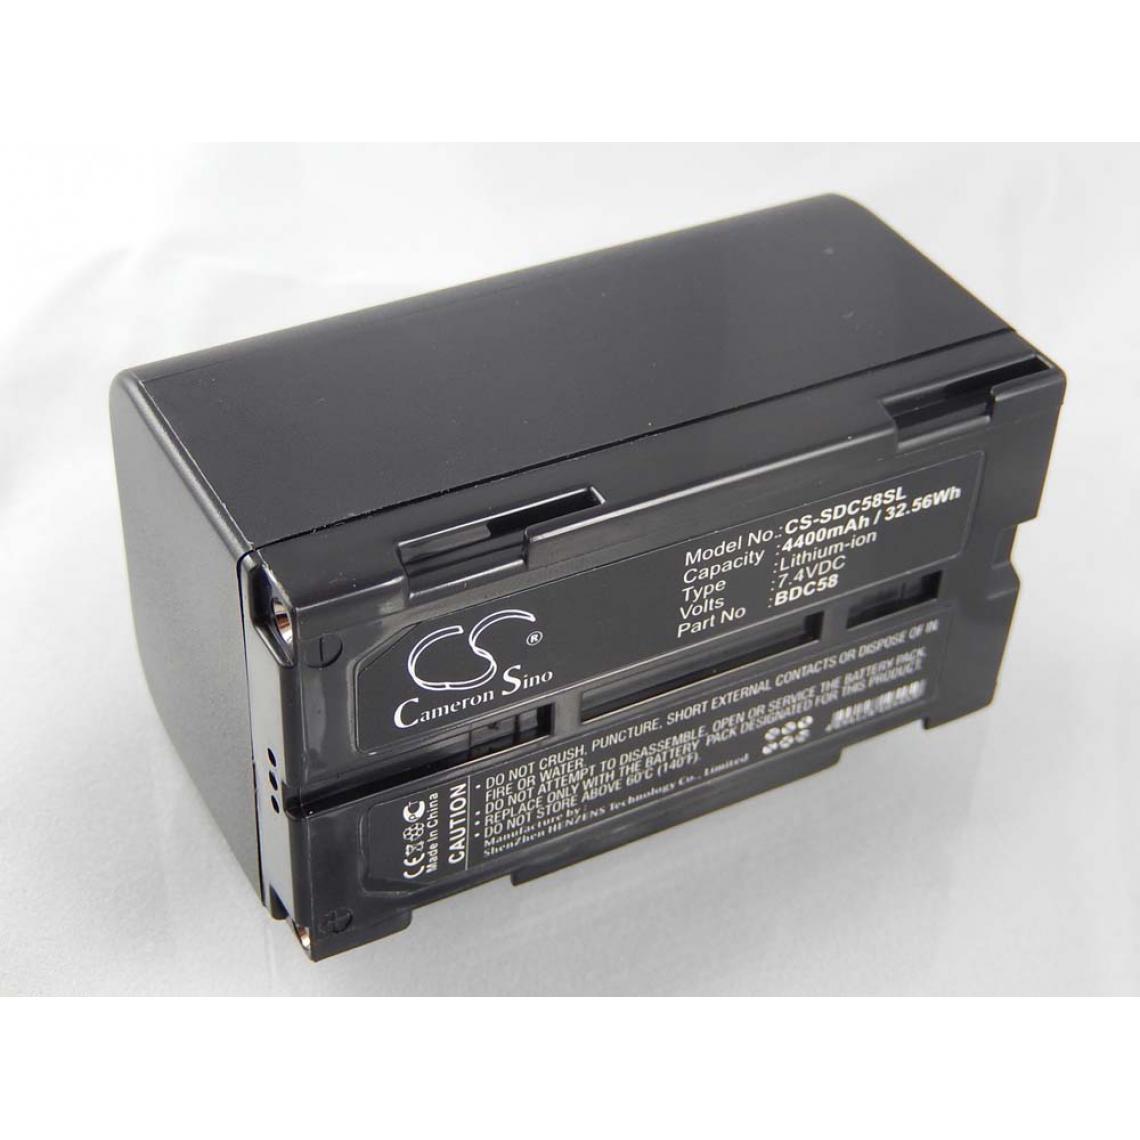 Vhbw - vhbw Batterie compatible avec Sokkia SDL30 Digital Level, SDL30M 10, SDL30M 30R outil de mesure (4400mAh, 7,4V, Li-ion) - Piles rechargeables